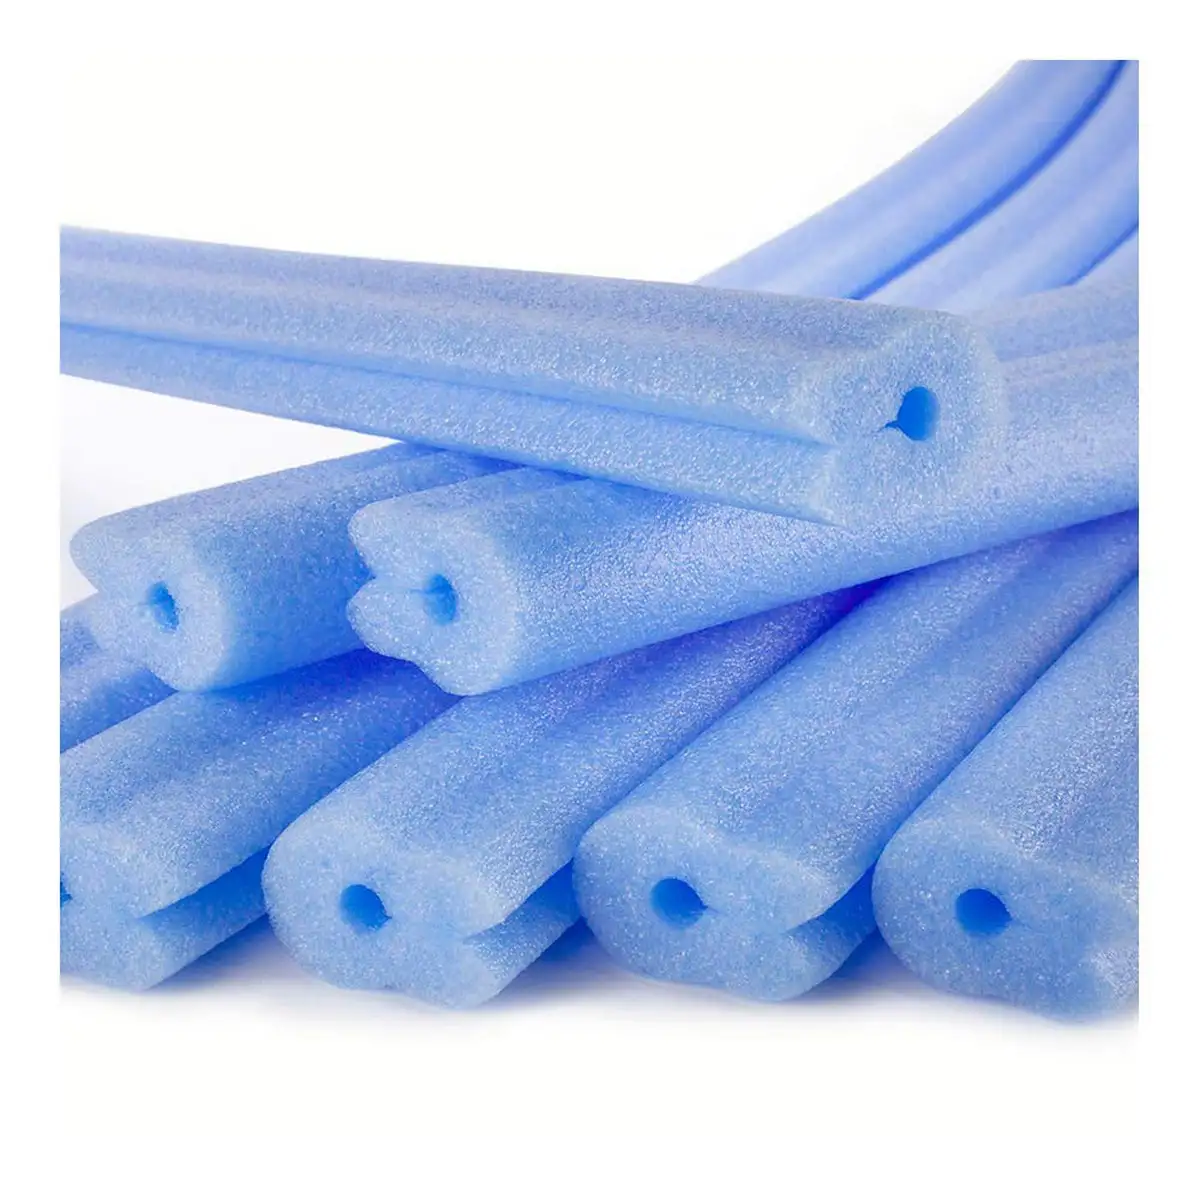 Corniere pour emballage fun go bleu polyethylene 1 m 2 unites _9736. DIAYTAR SENEGAL - L'Art de Vivre l'Élégance Accessible. Parcourez notre gamme variée et choisissez des produits qui ajoutent une touche de sophistication à votre style.